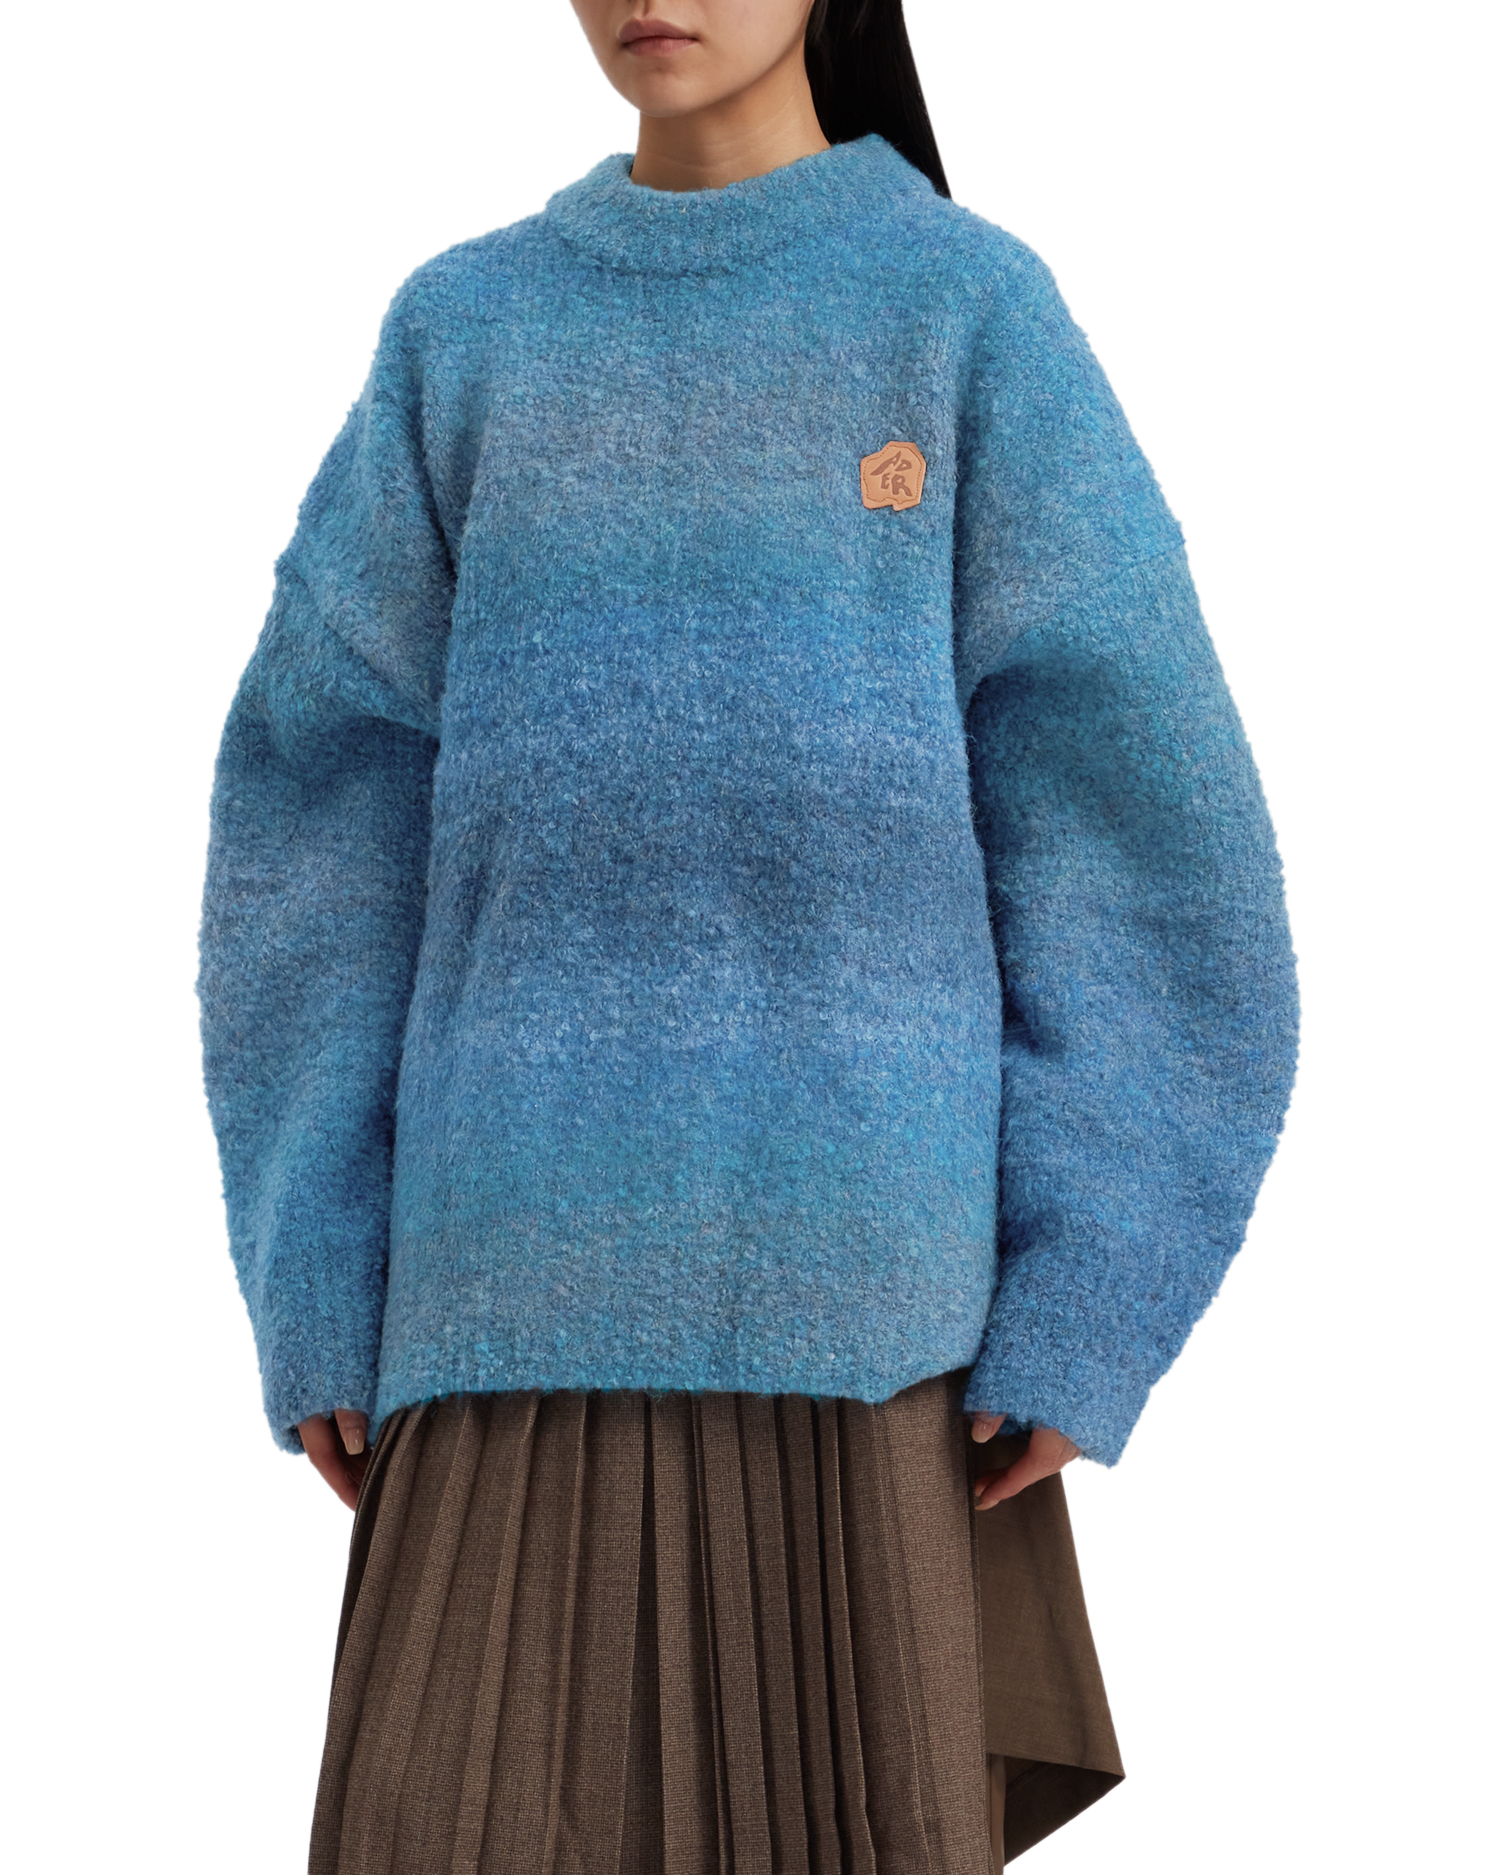 Canyon knit sweater